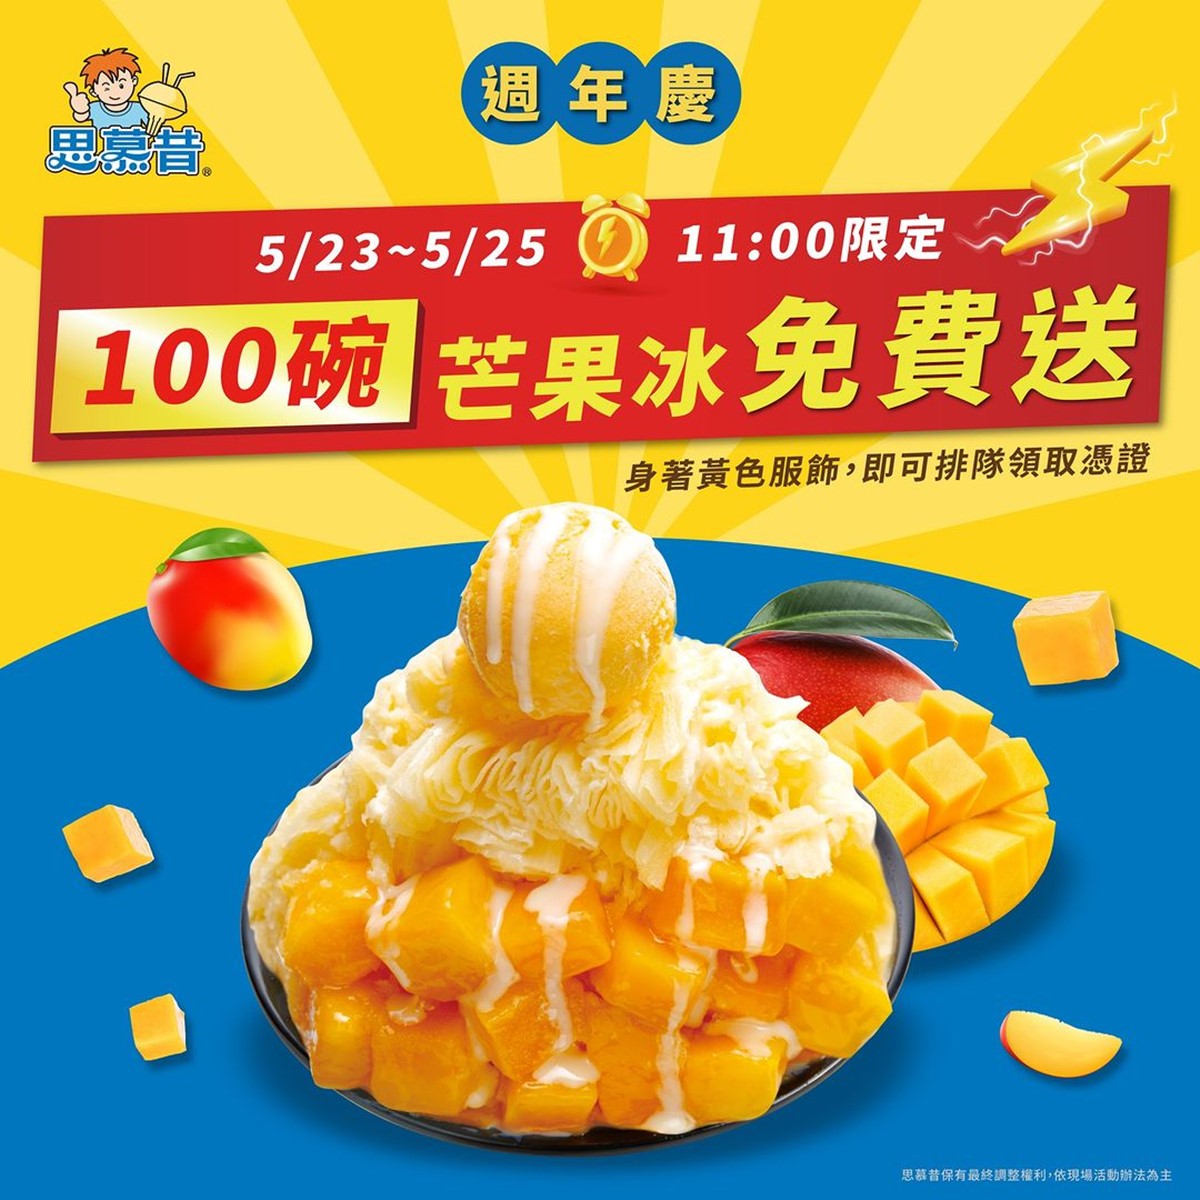 免費送300碗芒果冰！限時３天「穿黃色衣物」就能嗑，CNN推台北最強芒果冰